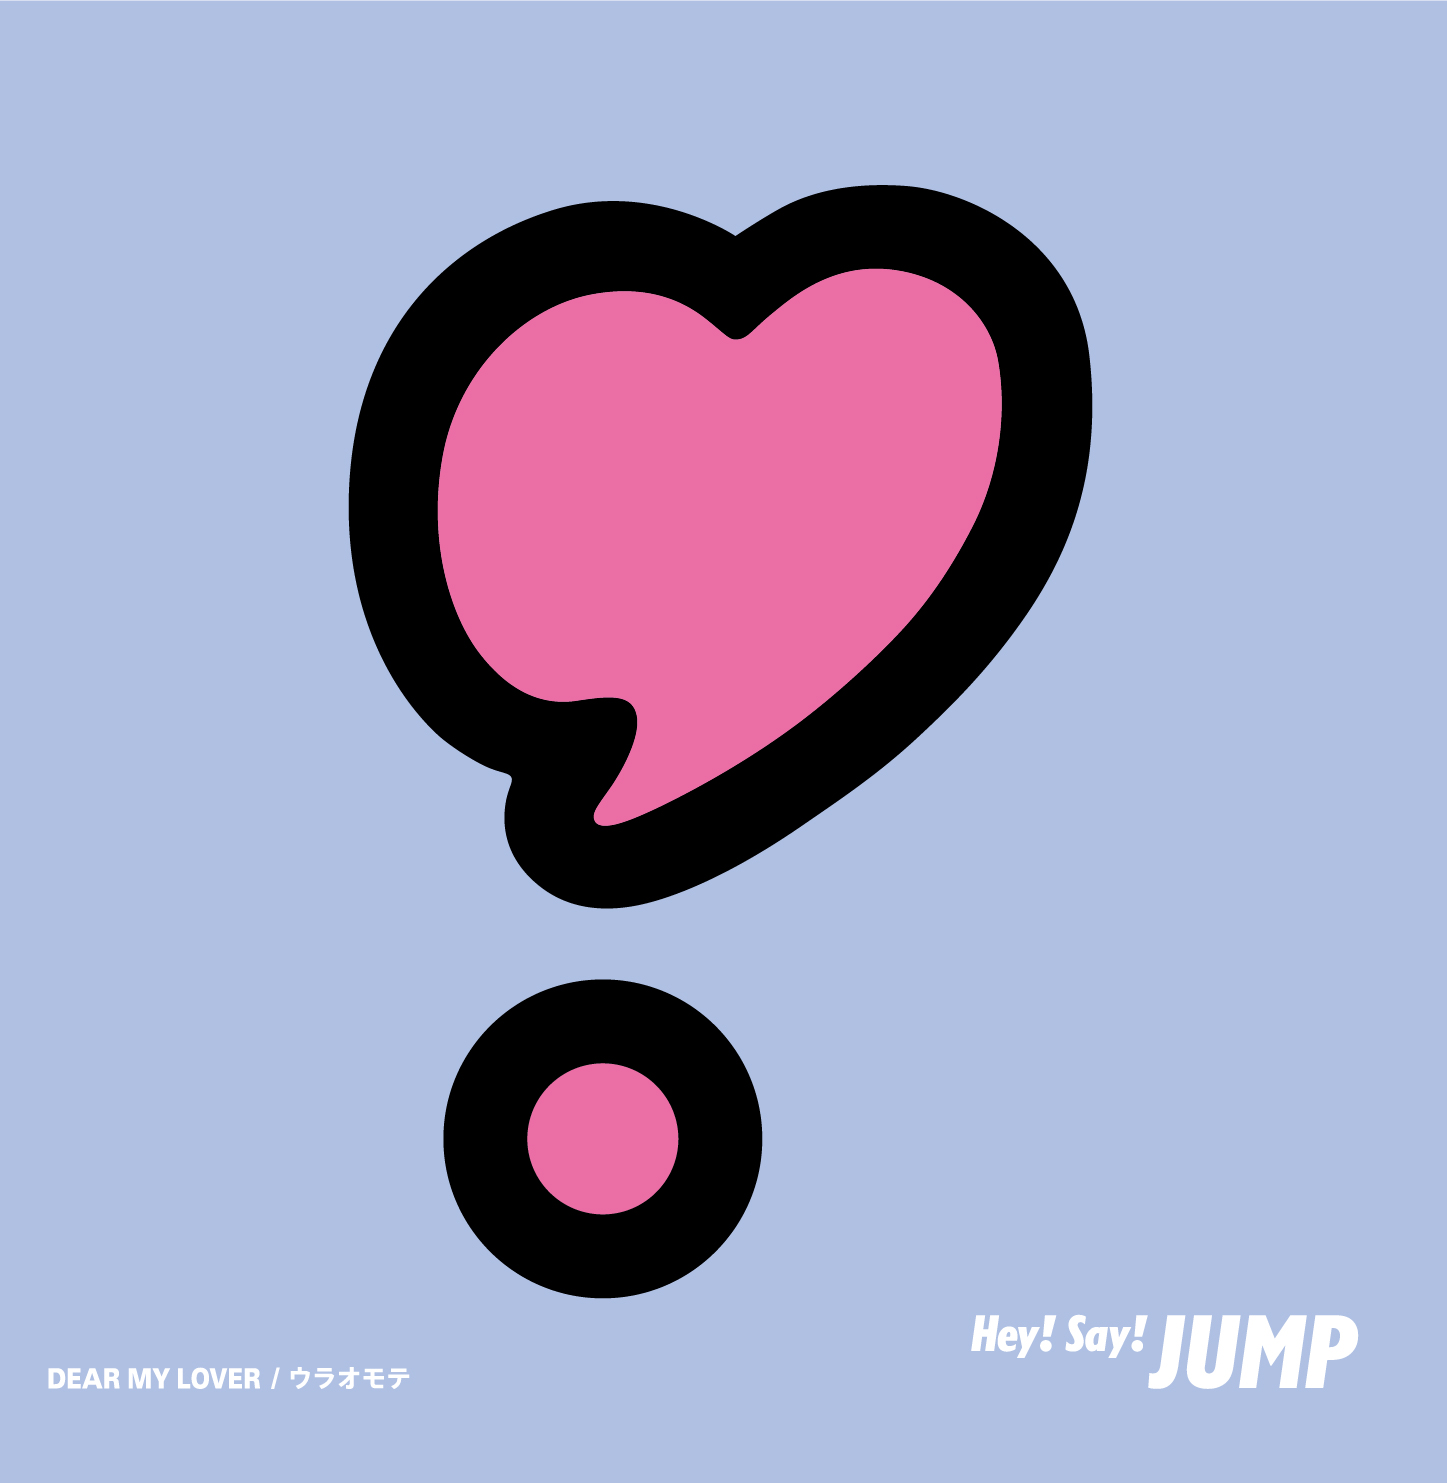 Hey!Say!JUMP 最新シングル「DEAR MY LOVER/ウラオモテ」が最新「オリコン週間合算シングルランキング」週間24万6000PTで1位